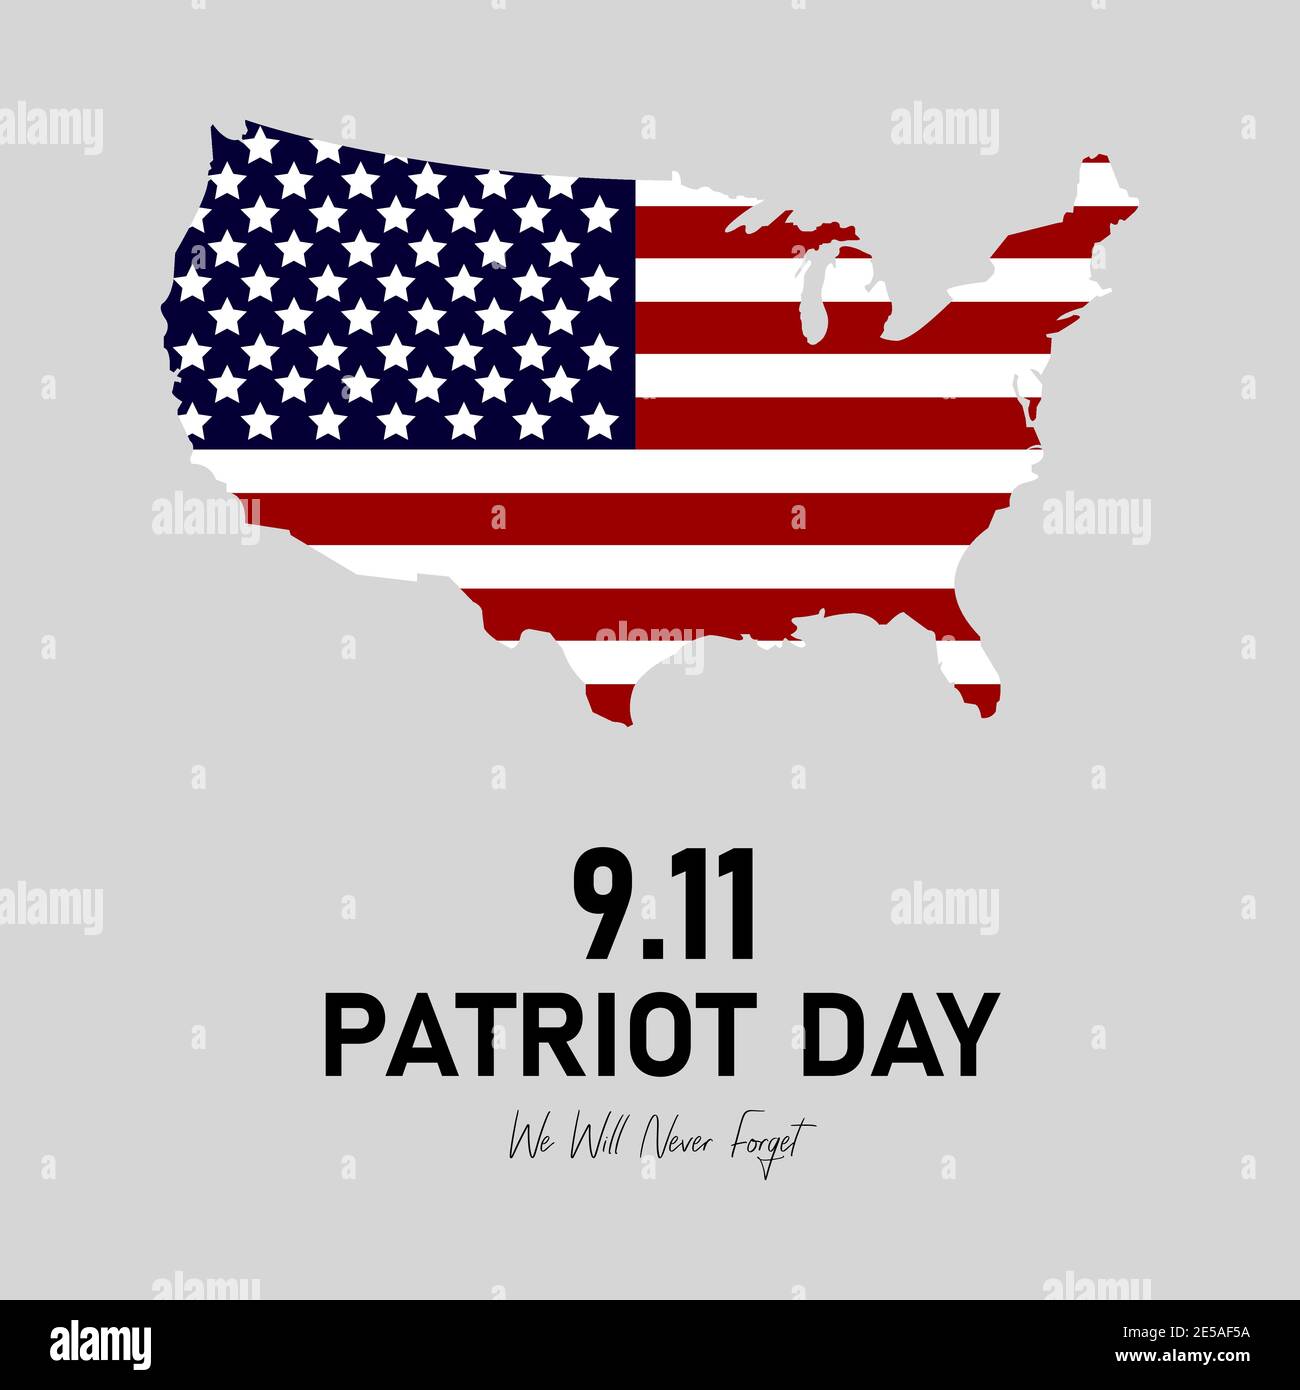 9.11 Patriot Day in den USA. Wir Werden Es Nie Vergessen. September 11. Patriot Day Poster oder Banner. Amerikanische Flagge. Eps10 Stock Vektor